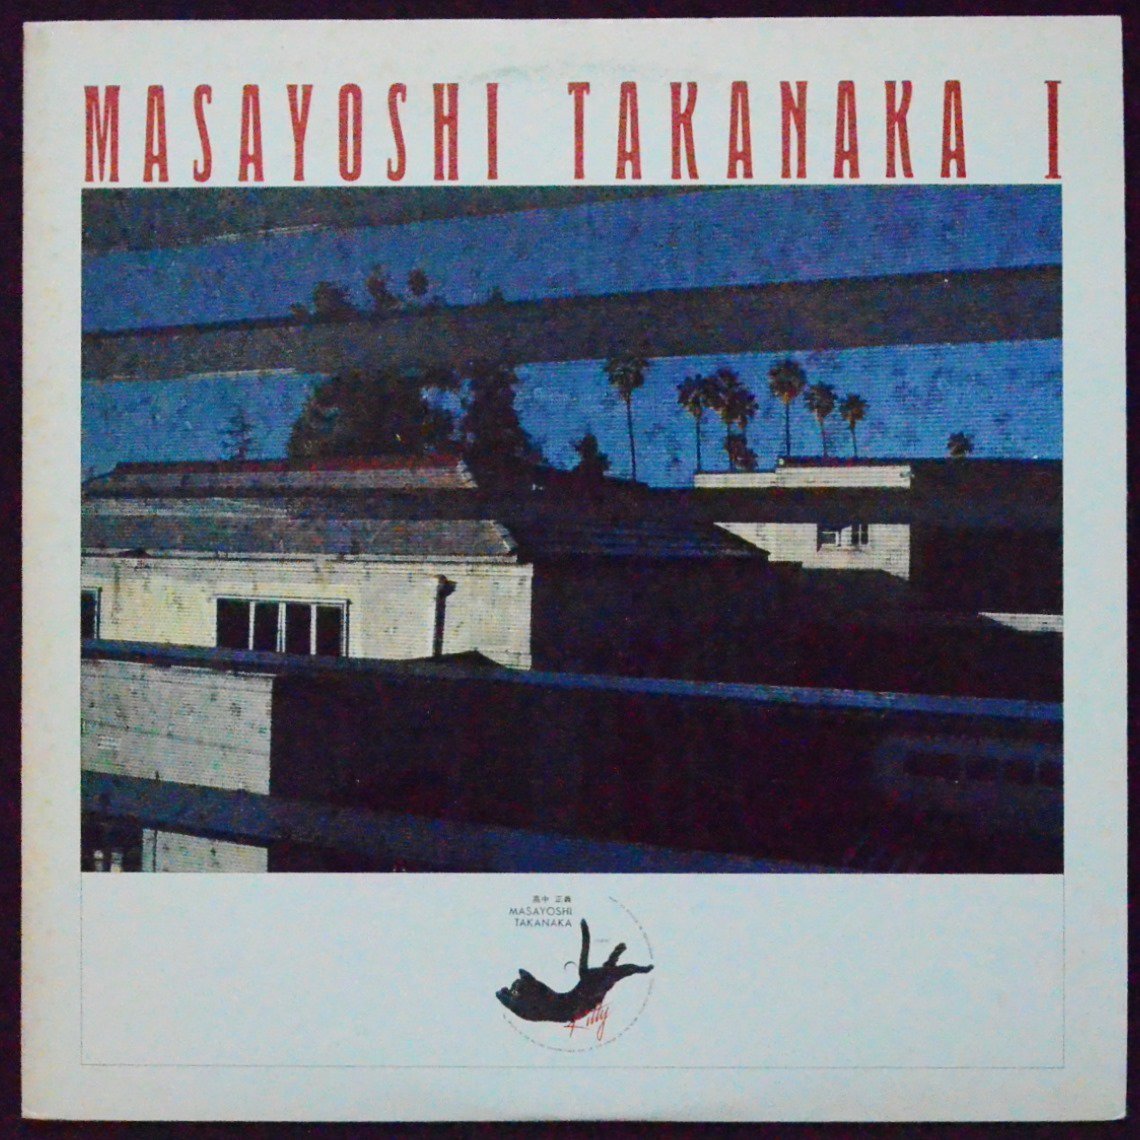 高中正義 MASAYOSHI TAKANAKA / MASAYOSHI TAKANAKA I (LP)